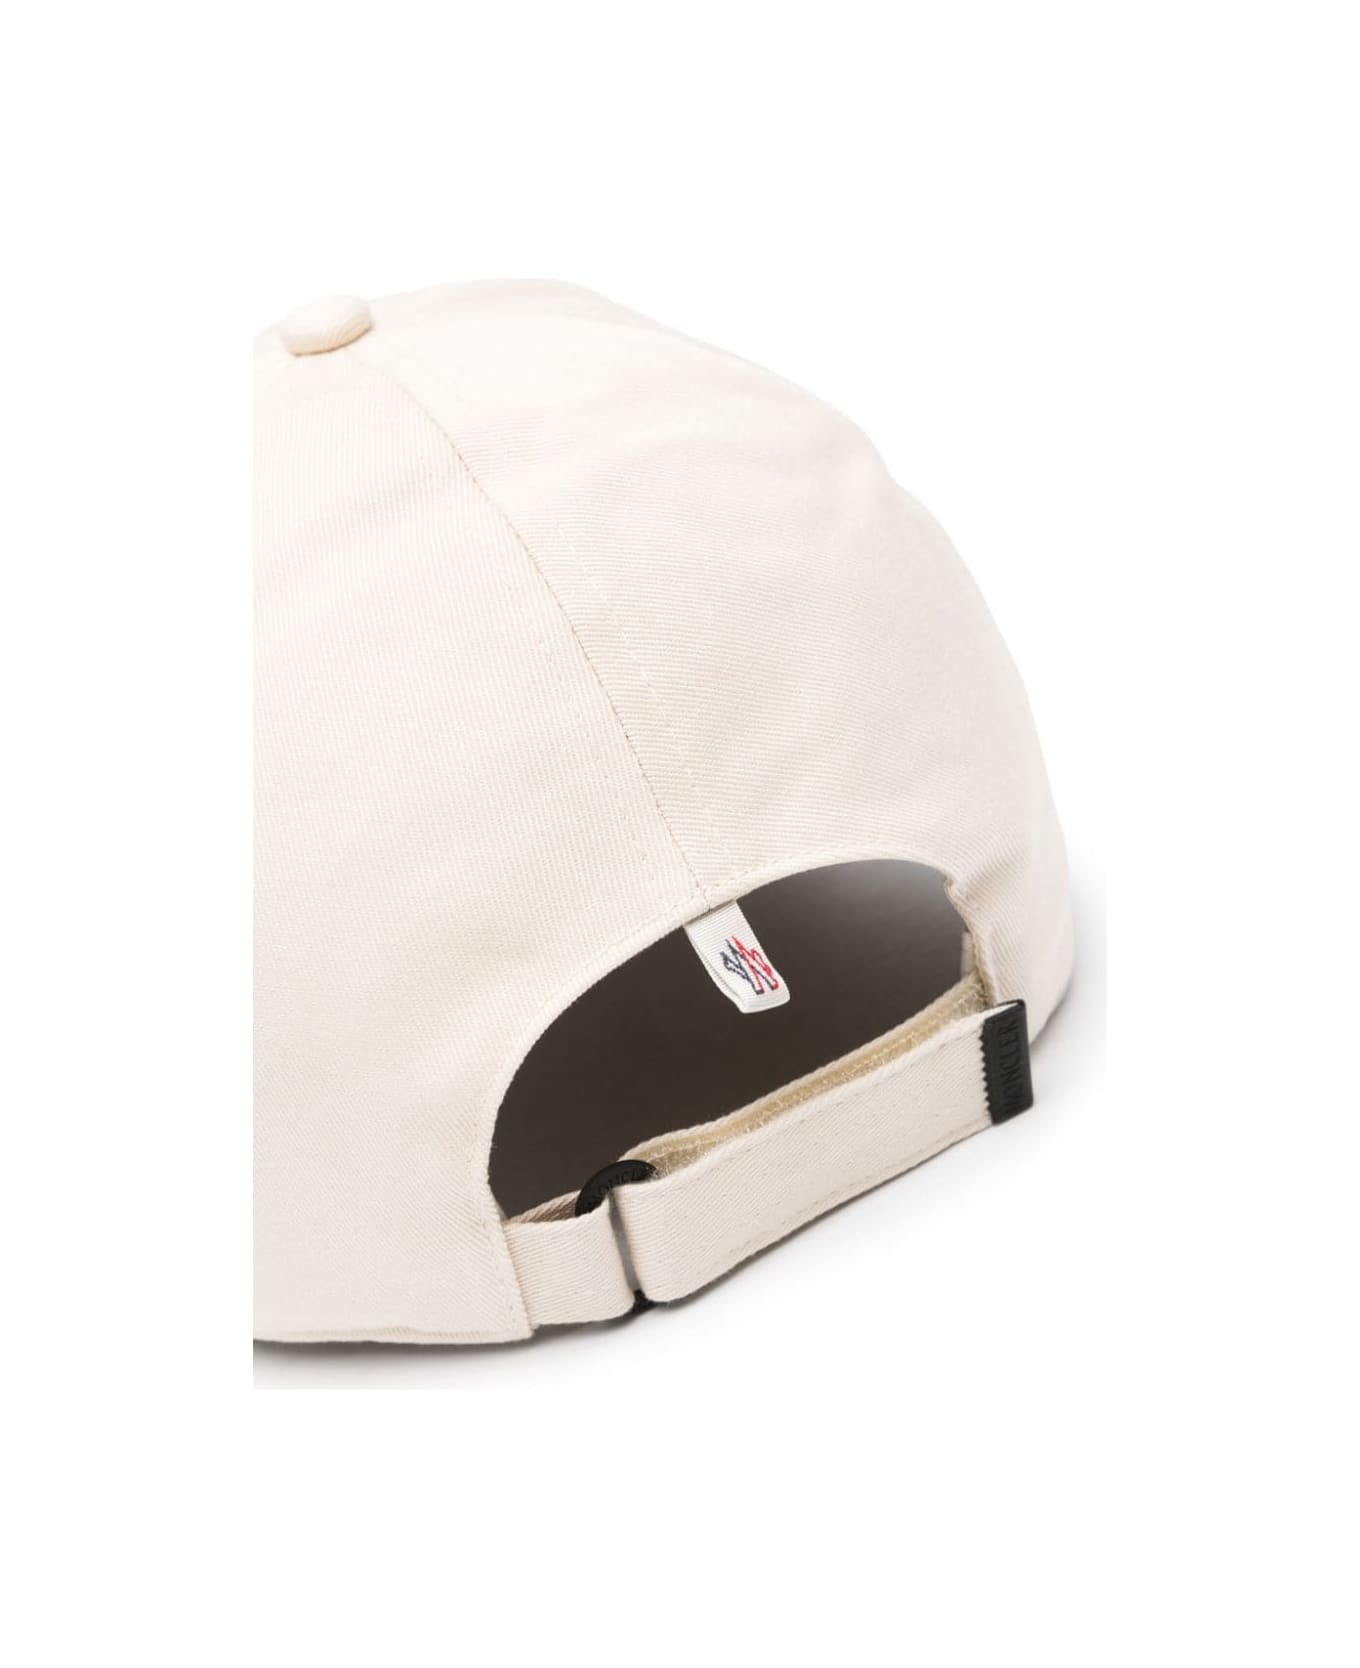 Moncler Grenoble White Baseball Hat With Embossed Logo - White